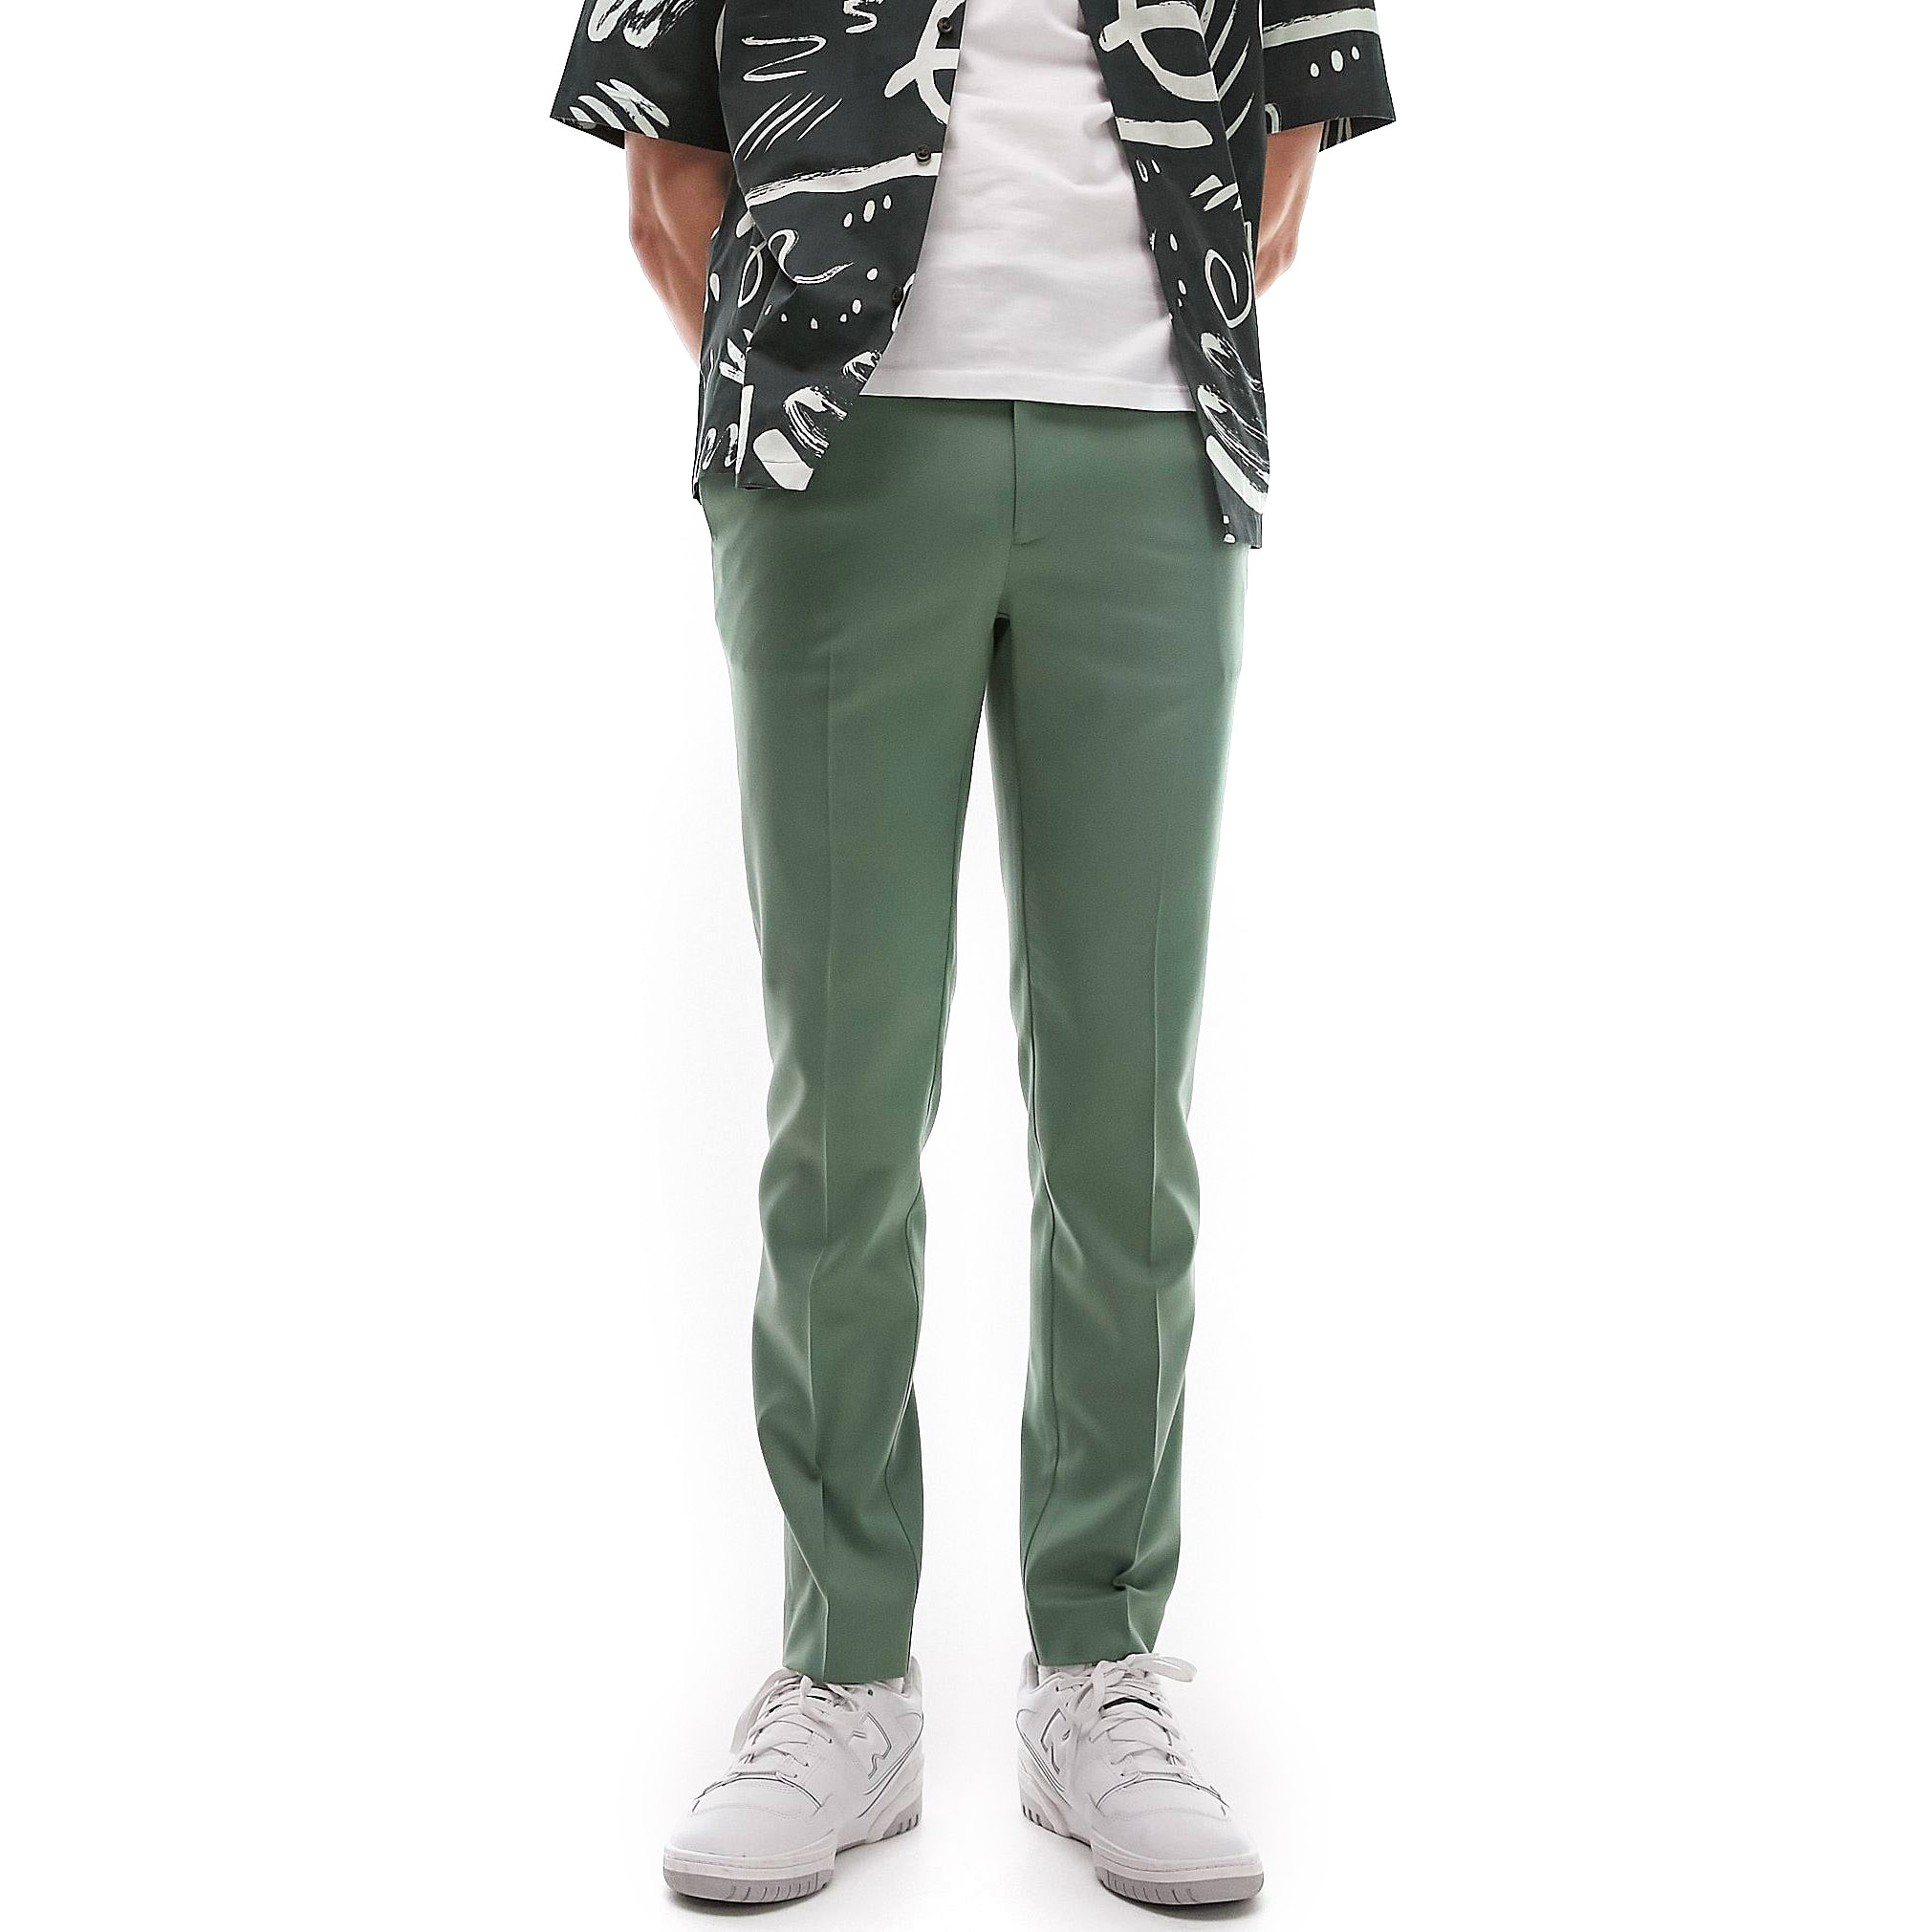 Брюки Topman Skinny Smart With Elastic Waistband, серовато-зеленый мужские облегающие джинсы черные зауженные брюки из денима с эластичным поясом в корейском стиле весна лето 2021